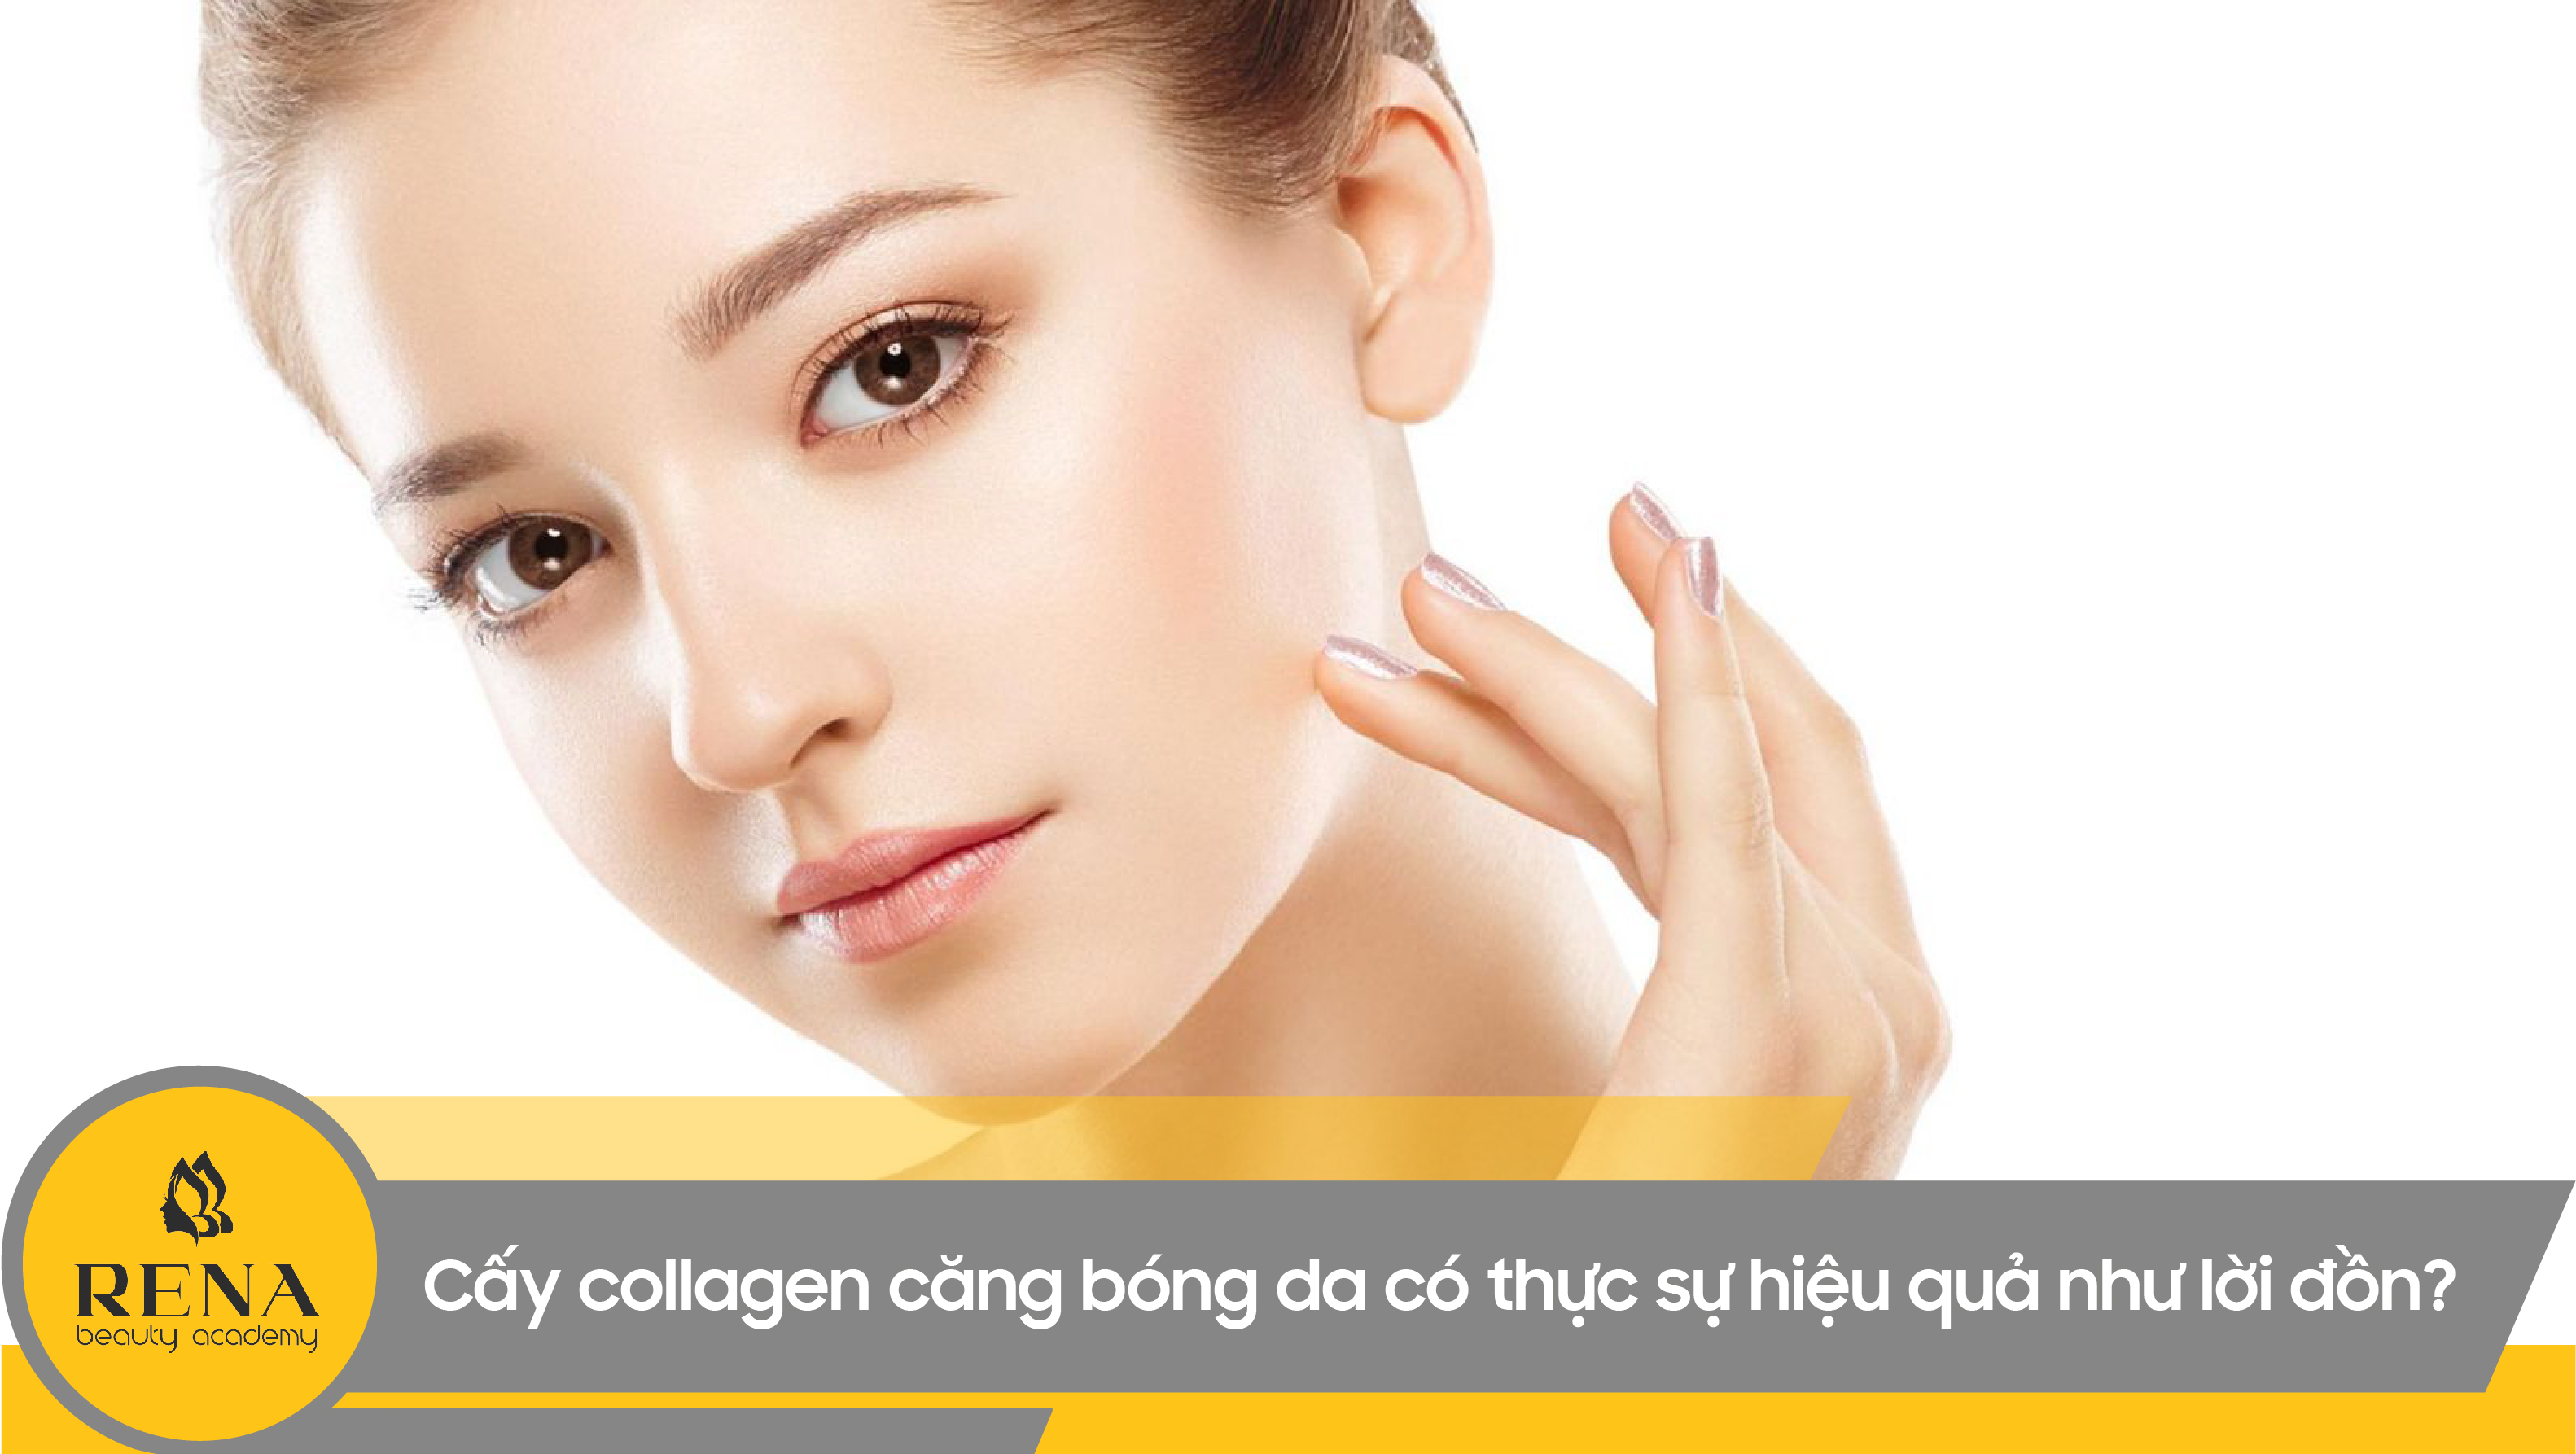 Cấy collagen căng bóng da có thực sự hiệu quả như lời đồn?